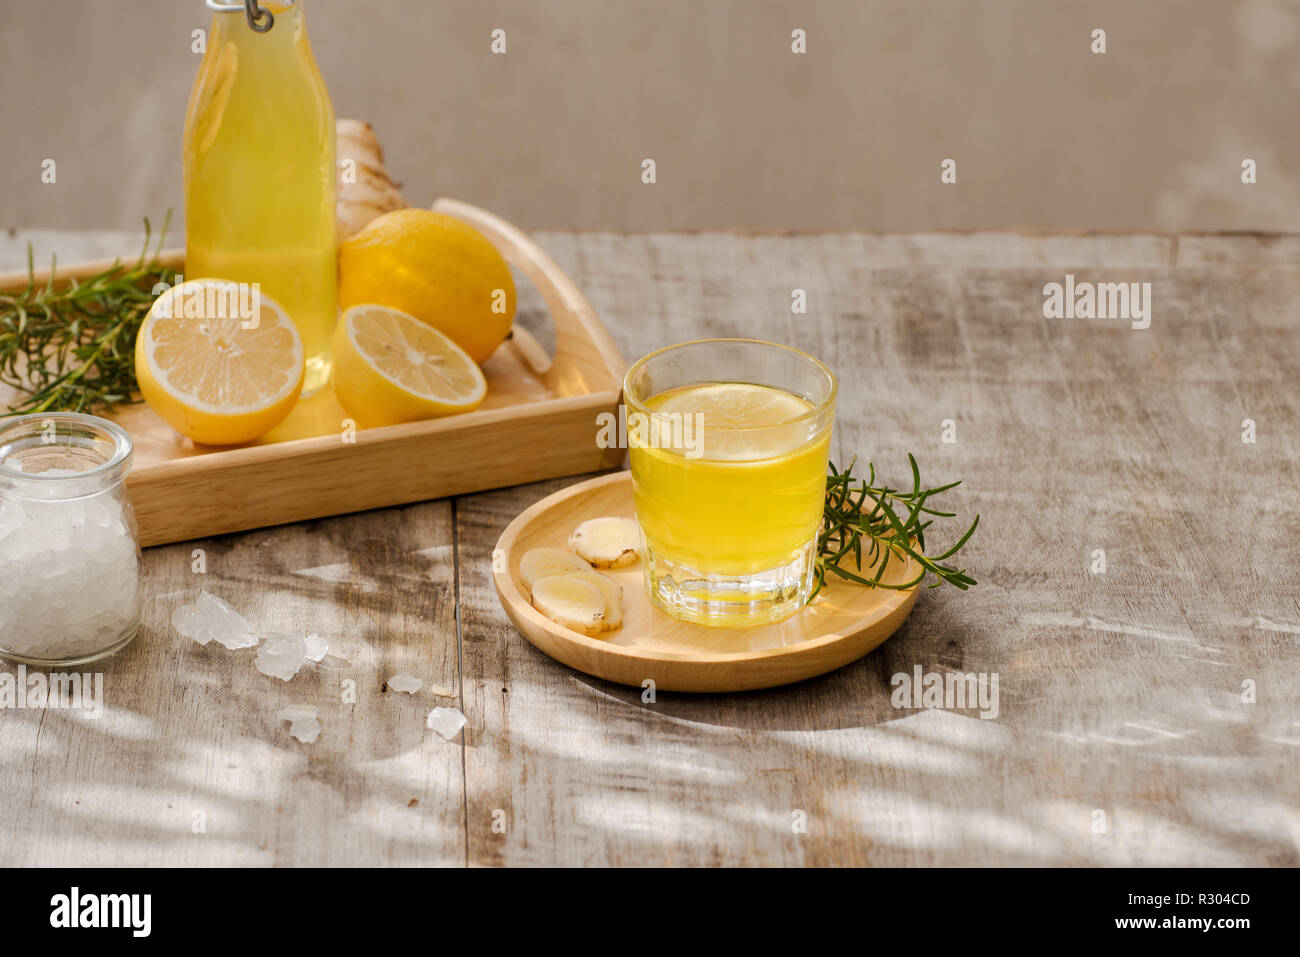 https://c8.alamy.com/compes/r304cd/ginger-ale-casero-limon-y-jengibre-bebe-soda-organica-copie-el-espacio-r304cd.jpg